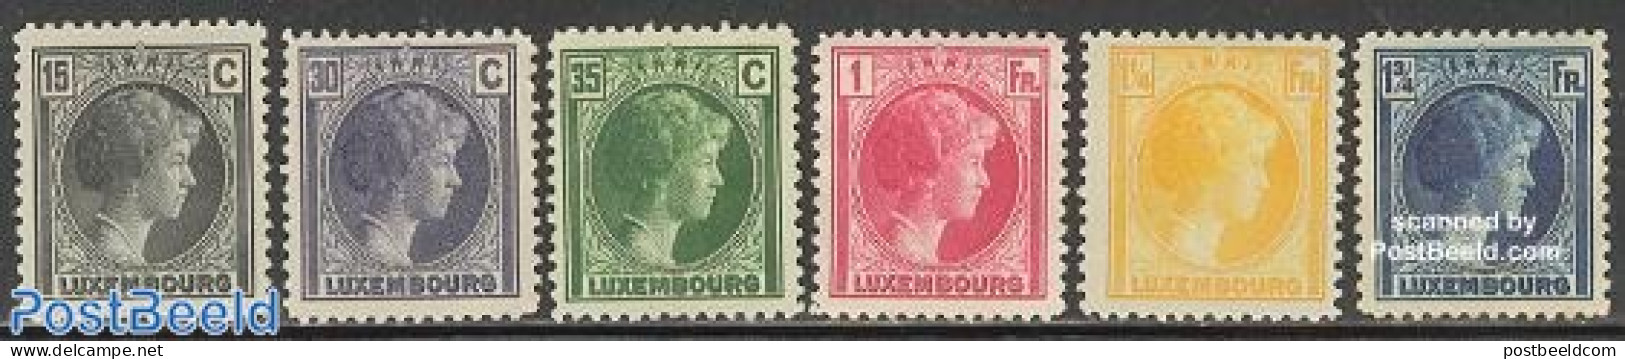 Luxemburg 1930 Definitives 6v, Unused (hinged) - Unused Stamps